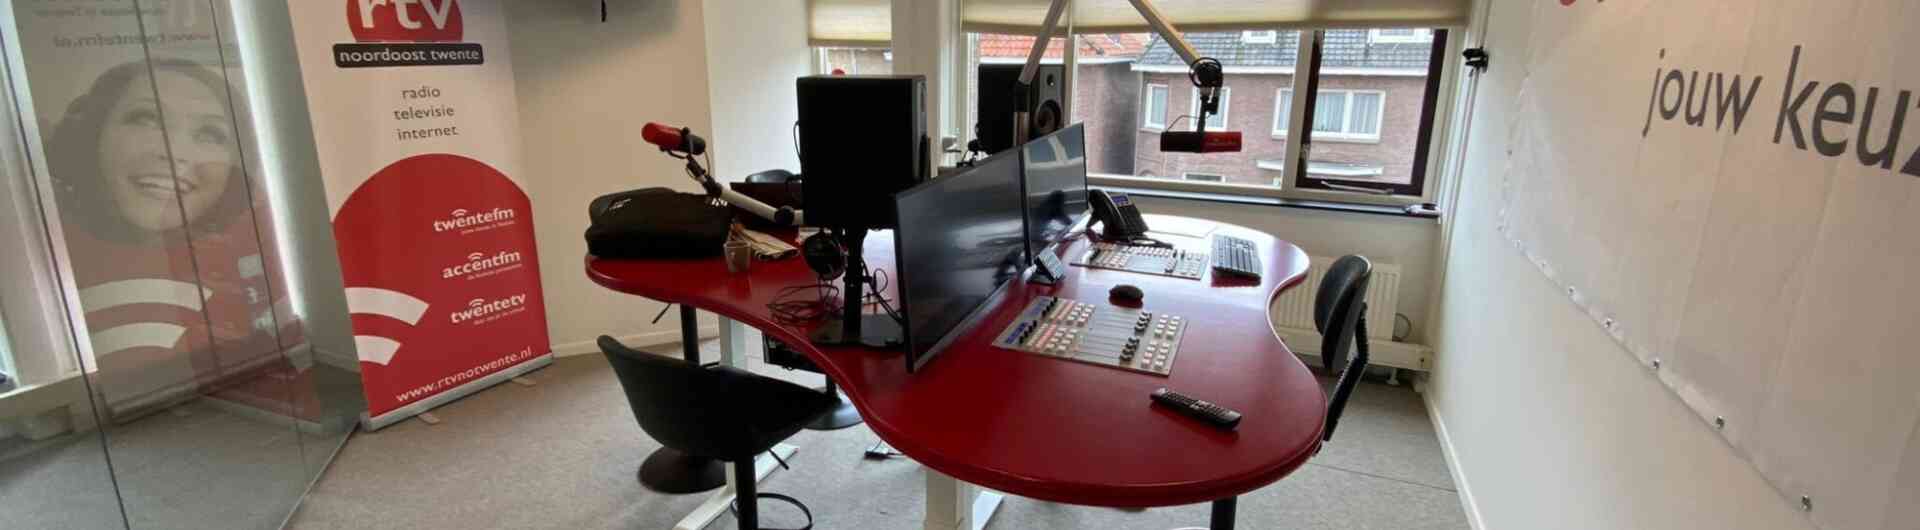 Twente FM Studio